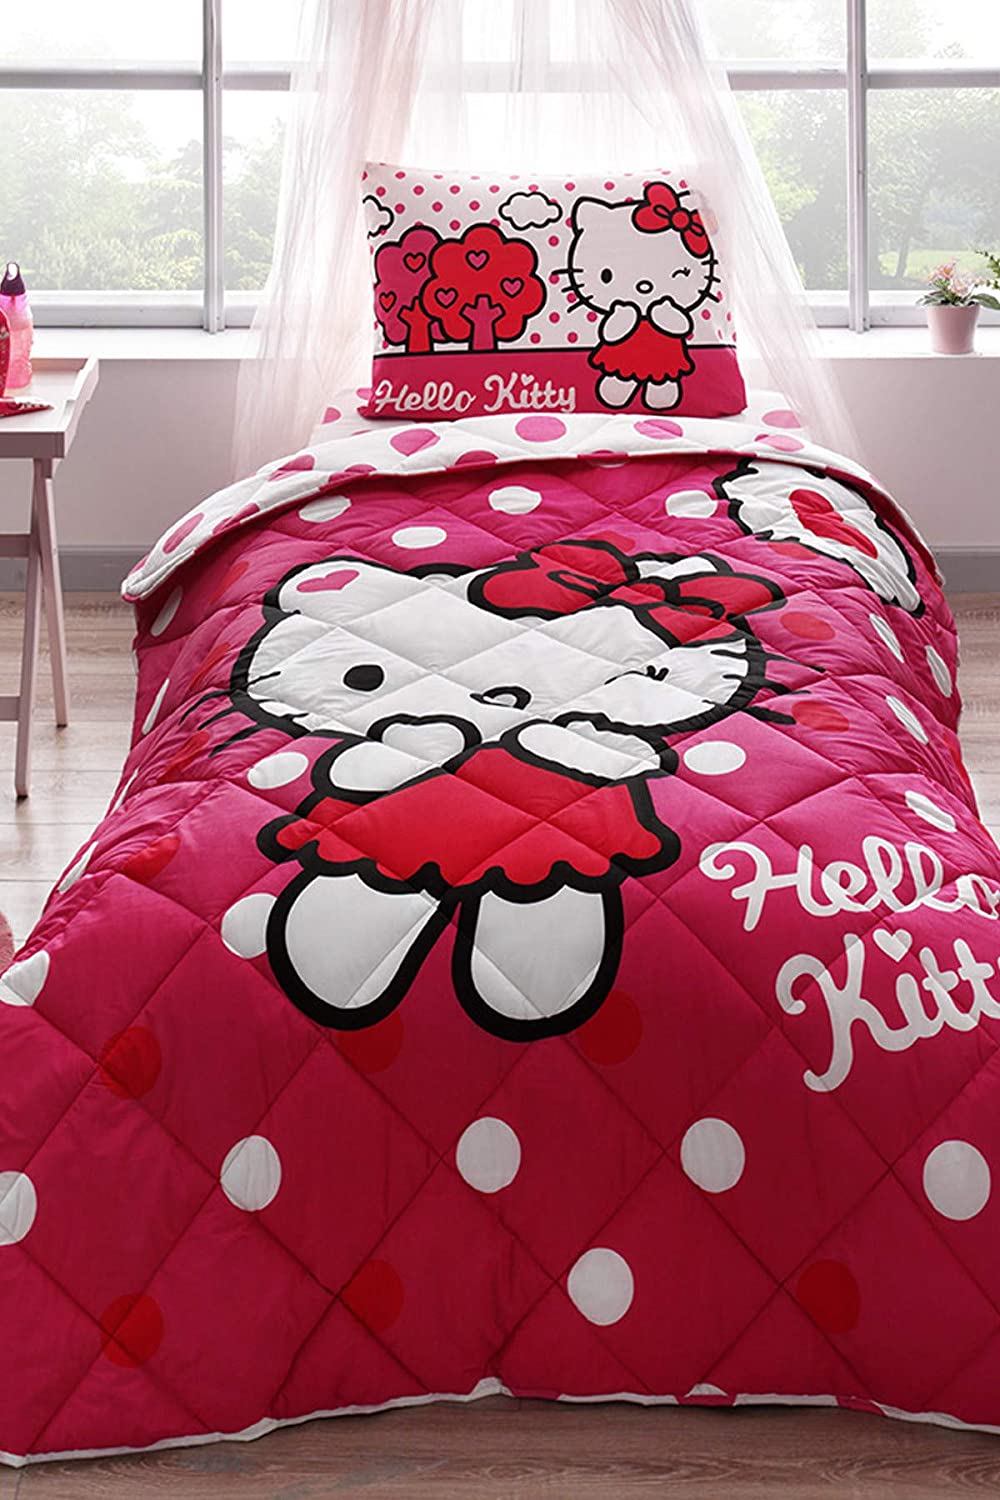 Hello Kitty themed comforter set